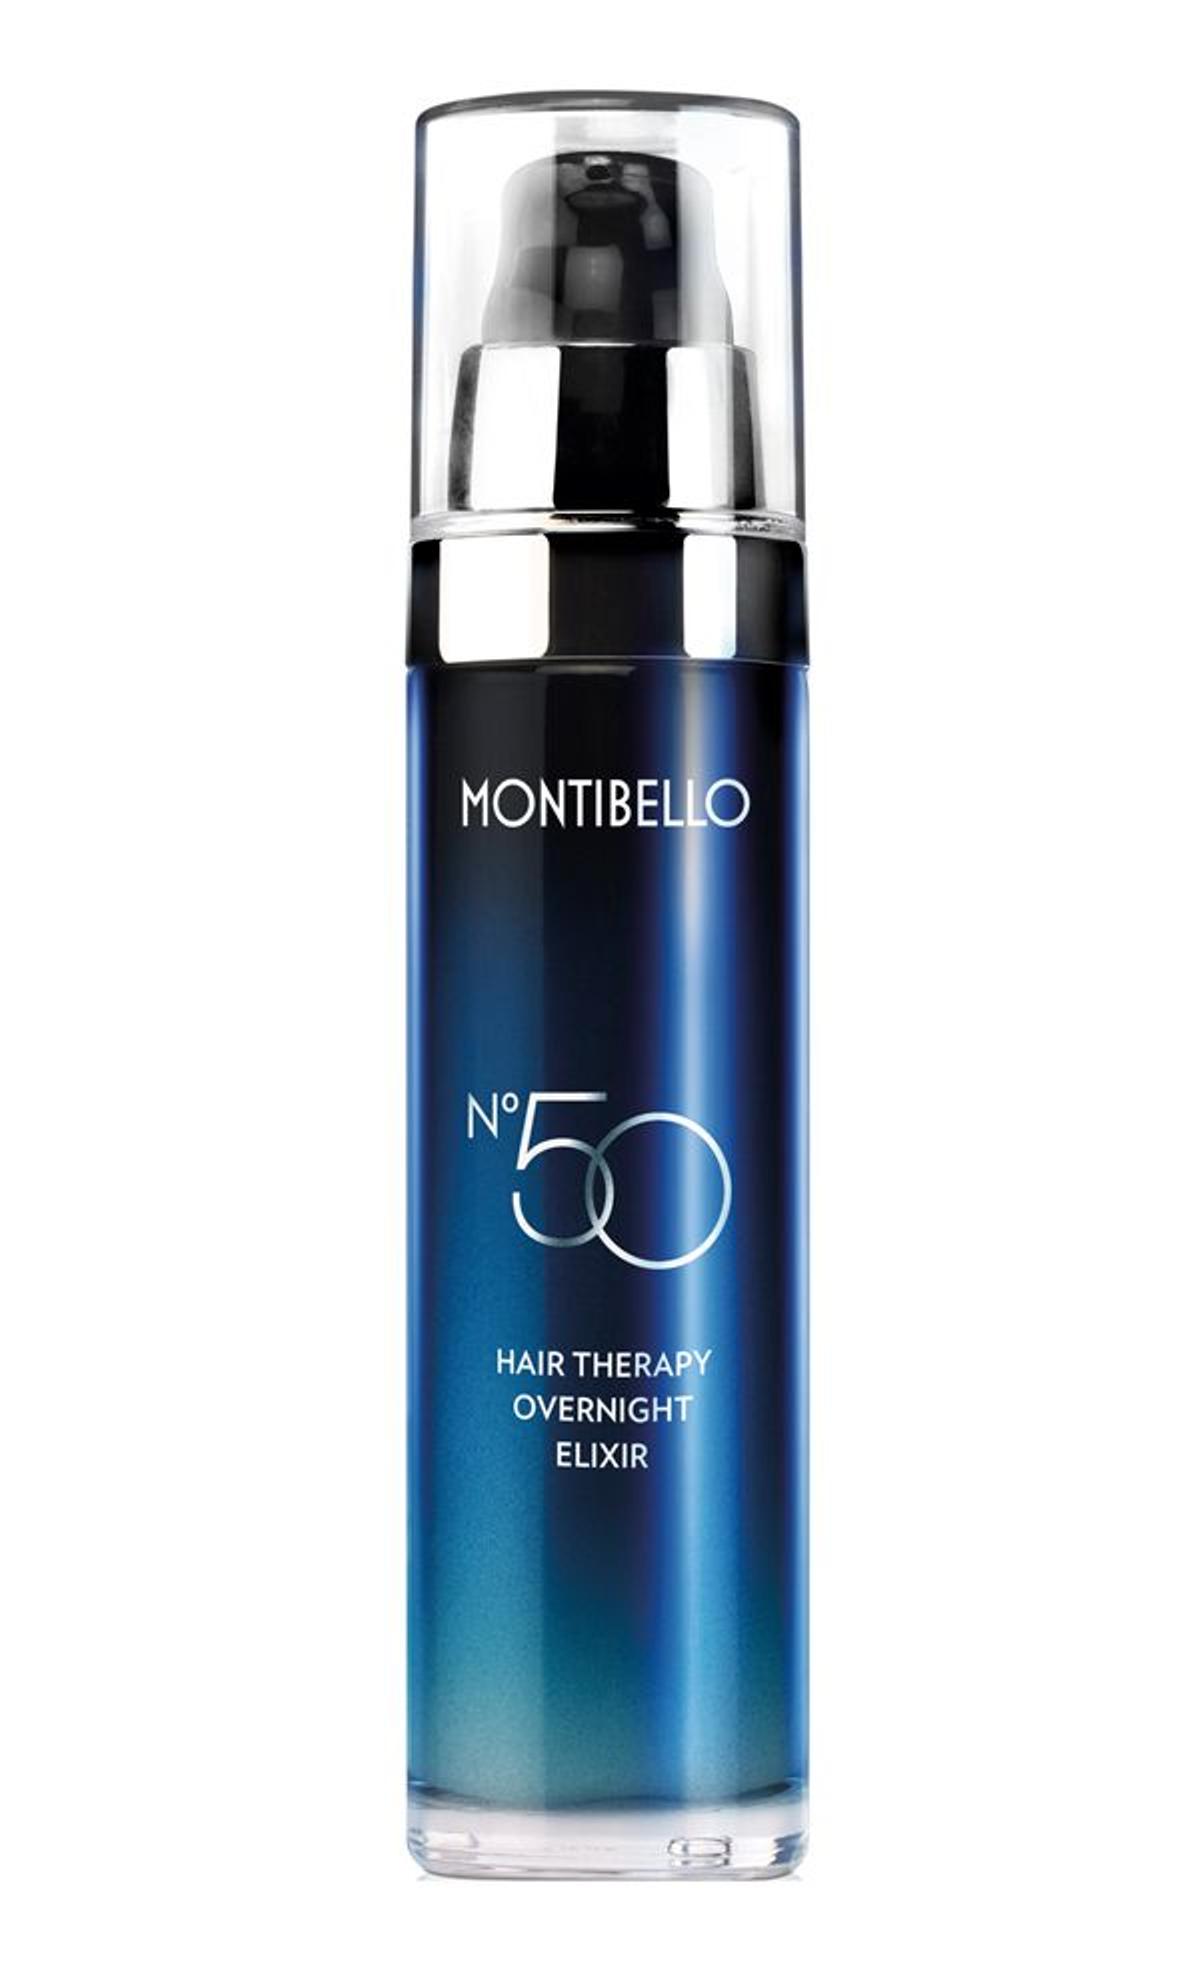 Nº 50 Hair therapy overnight elixir, Montibello